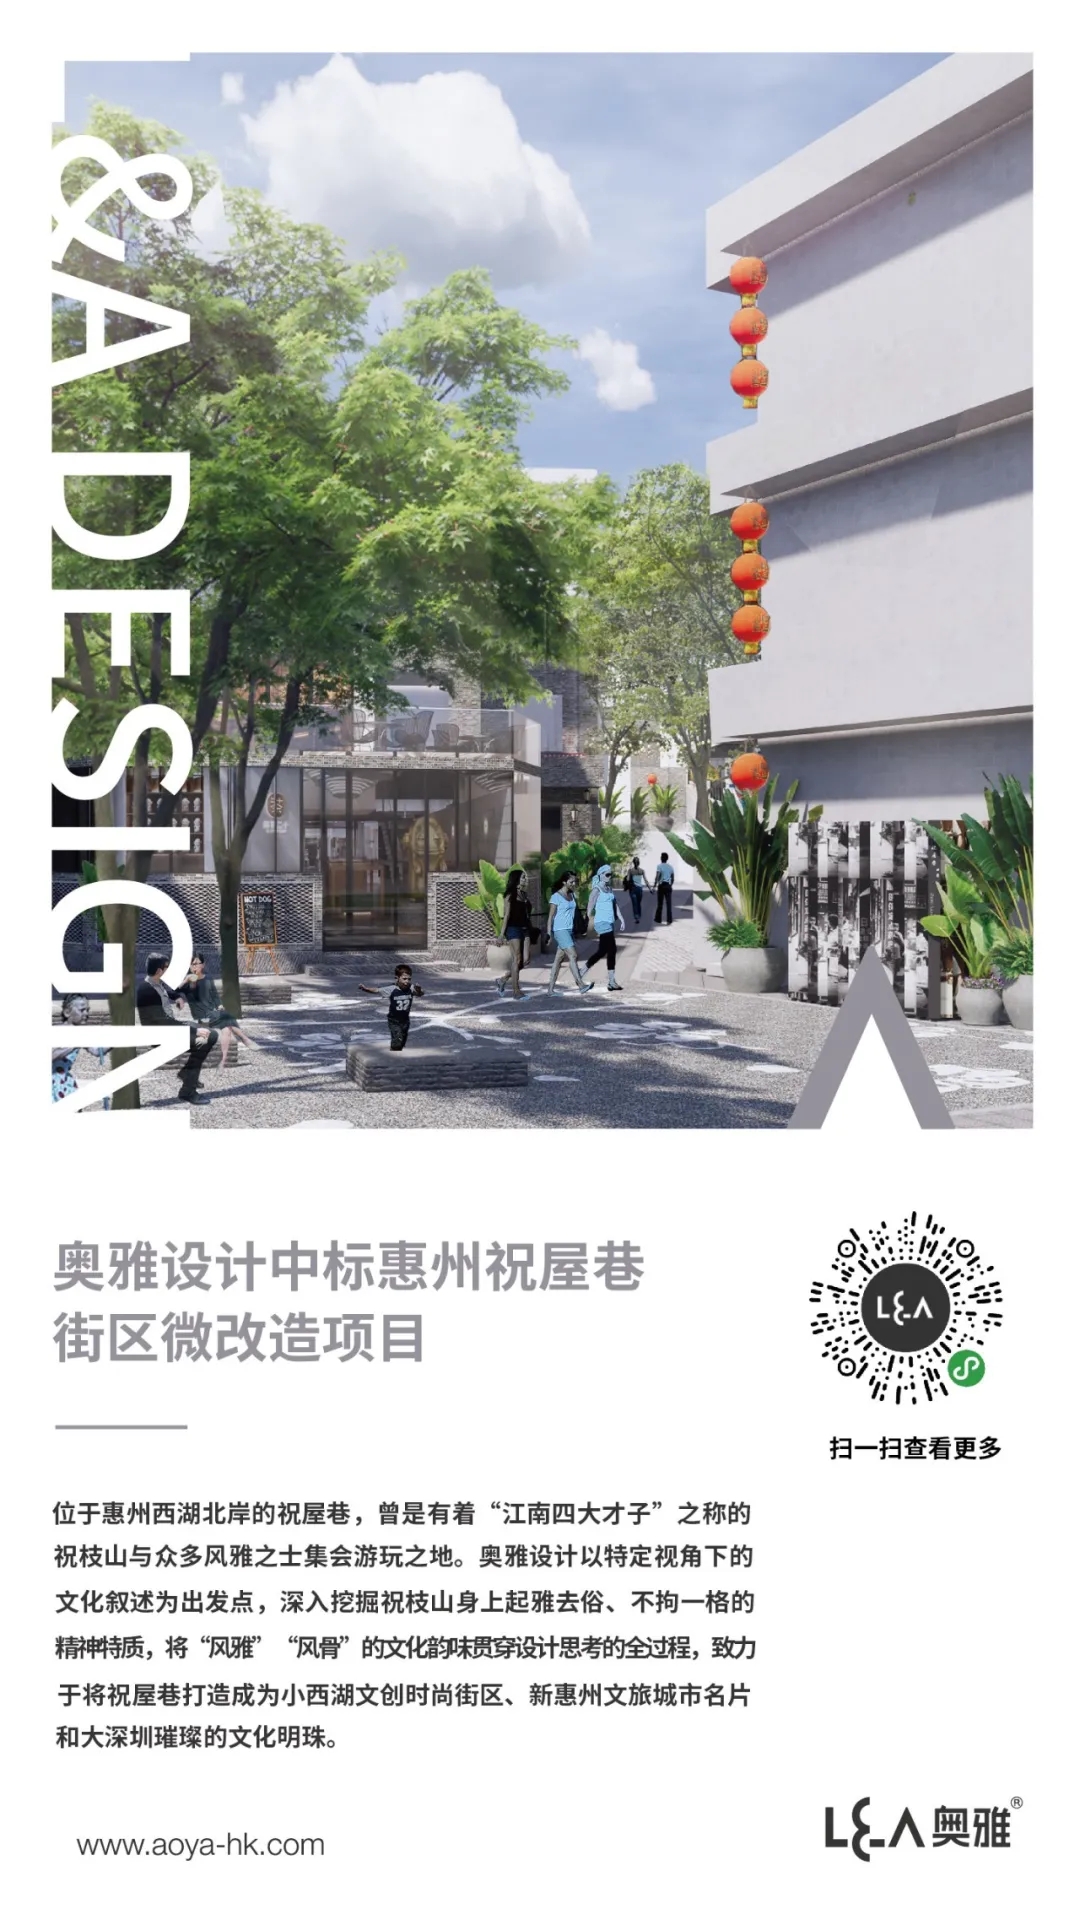 奥雅设计中标惠州祝屋巷街区微改造项目 | 喜讯